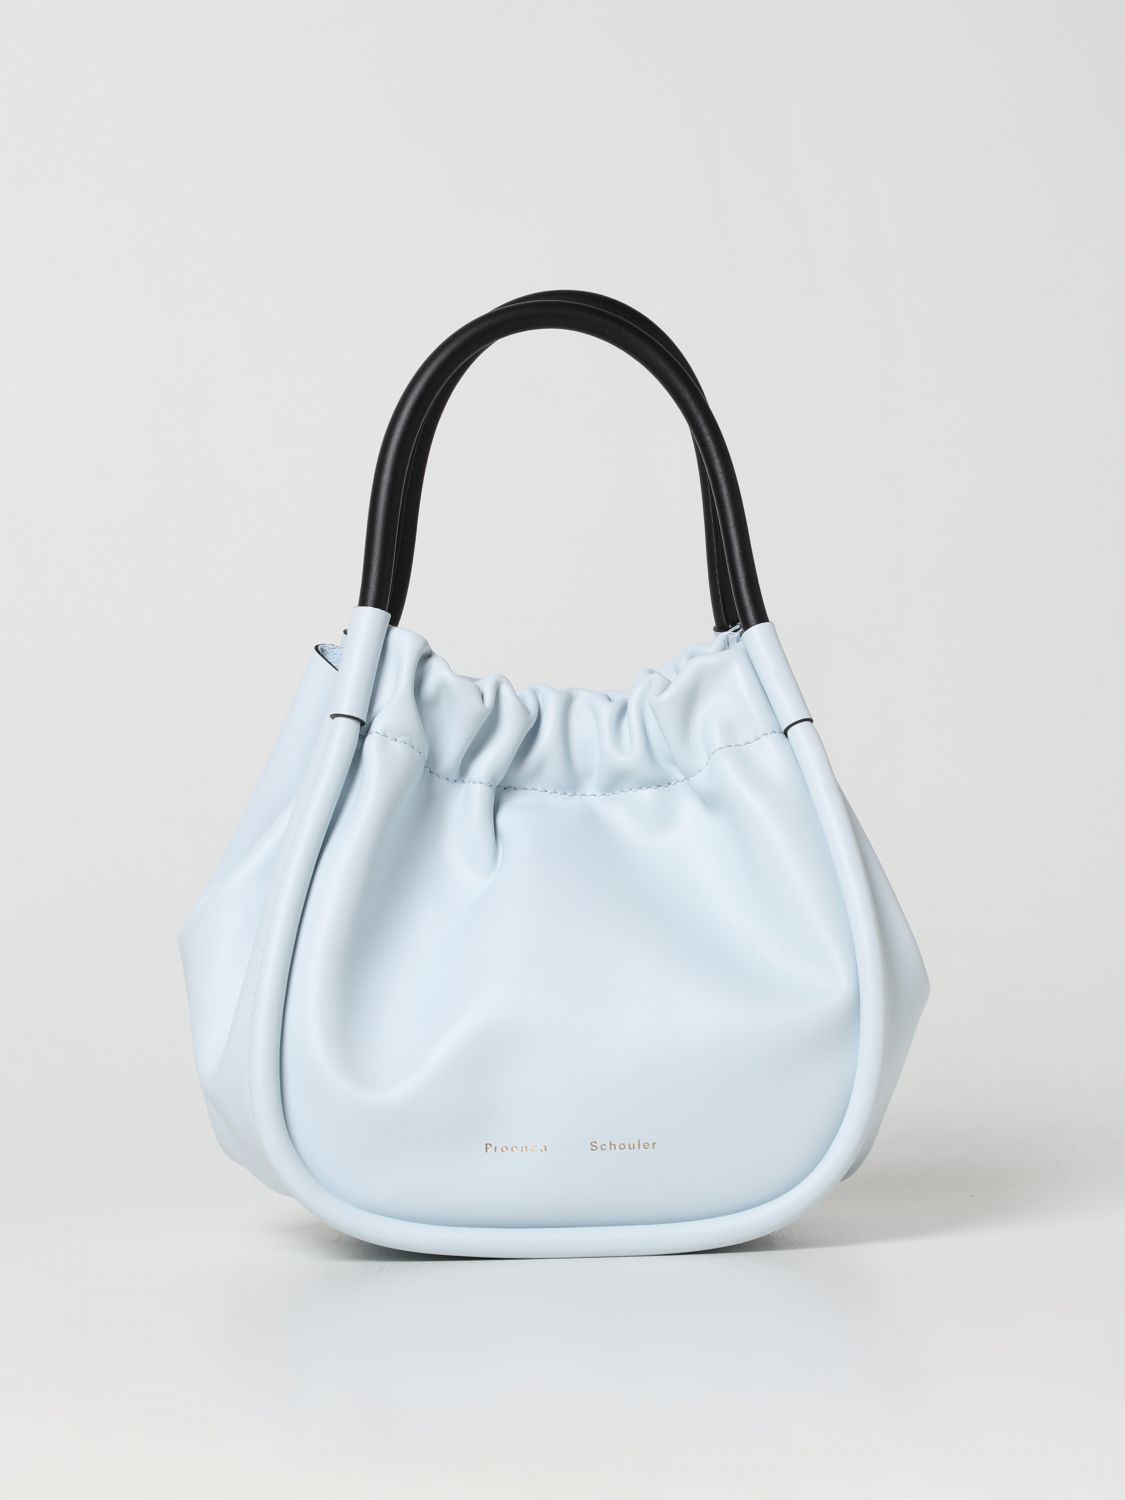 Proenza Schouler Handbags  Women In Blue